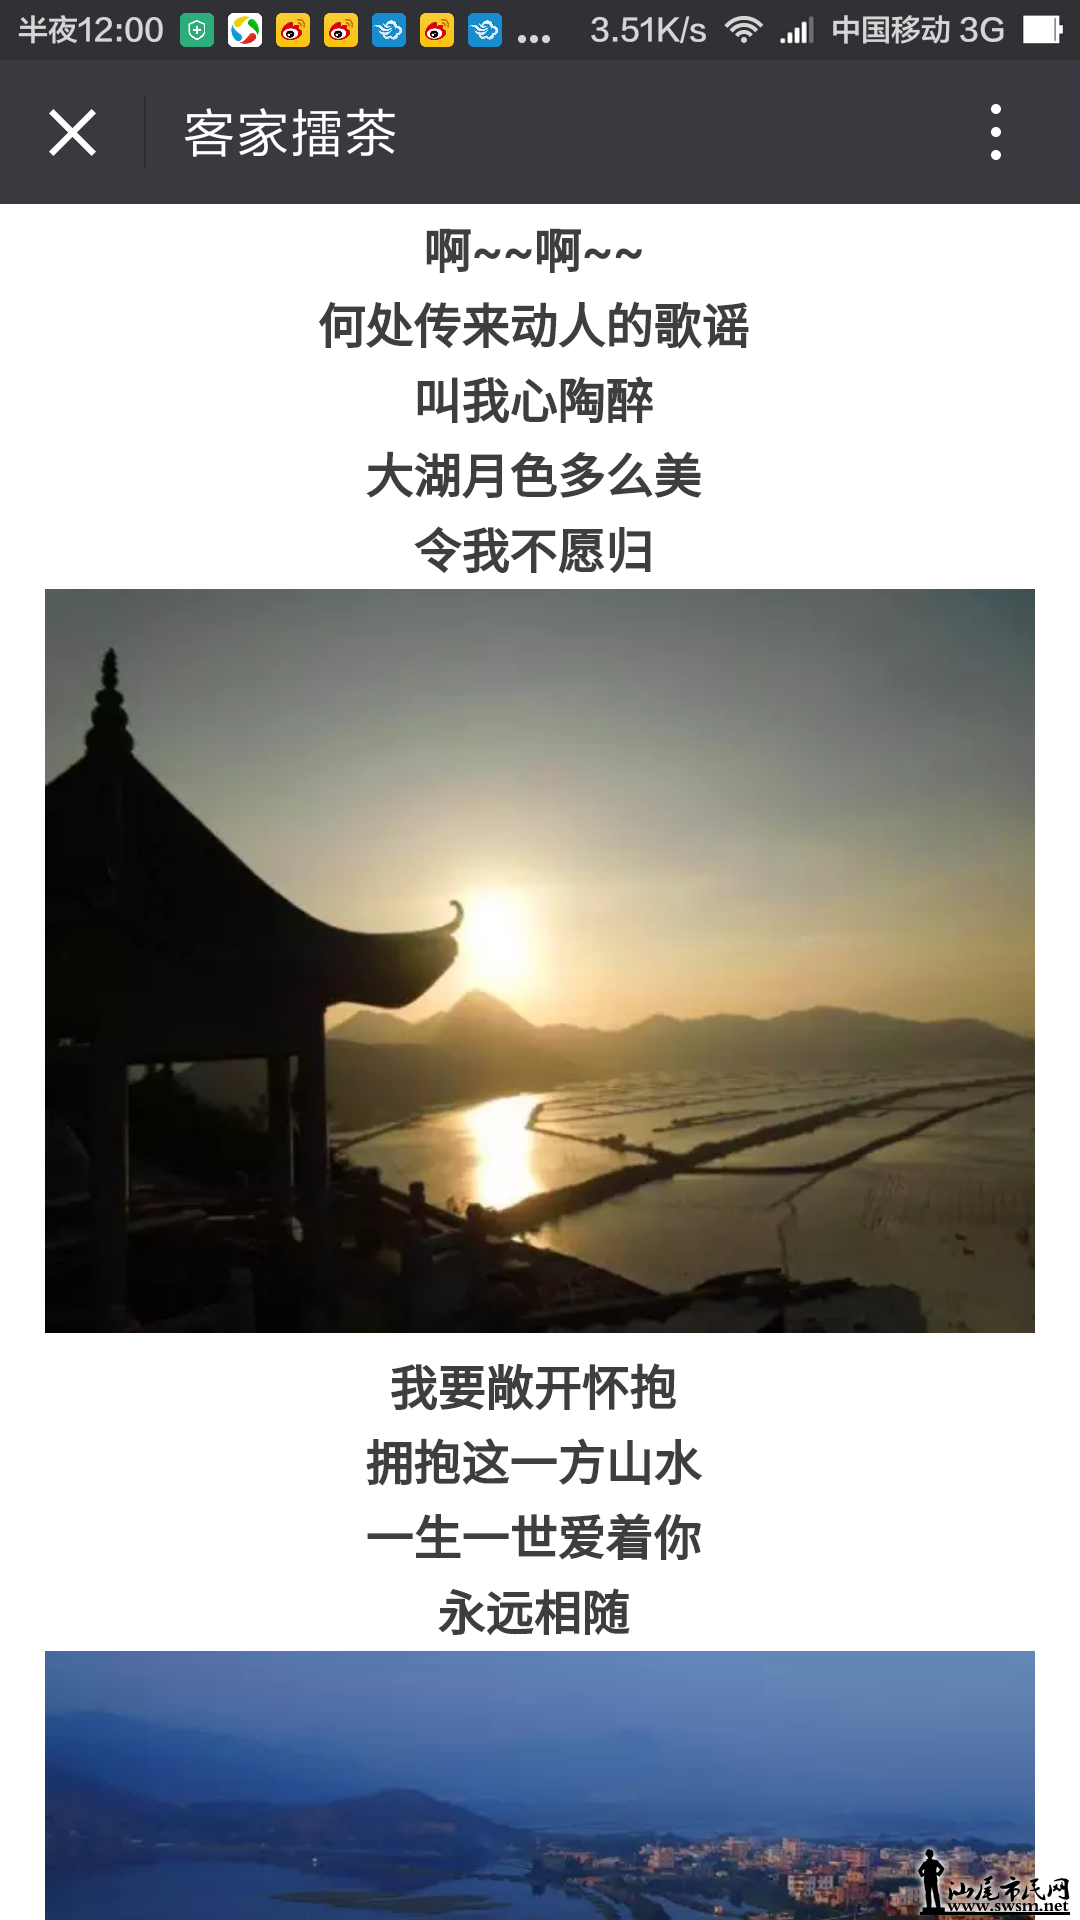 Screenshot_2016-05-23-00-00-54_com.tencent.mm.png